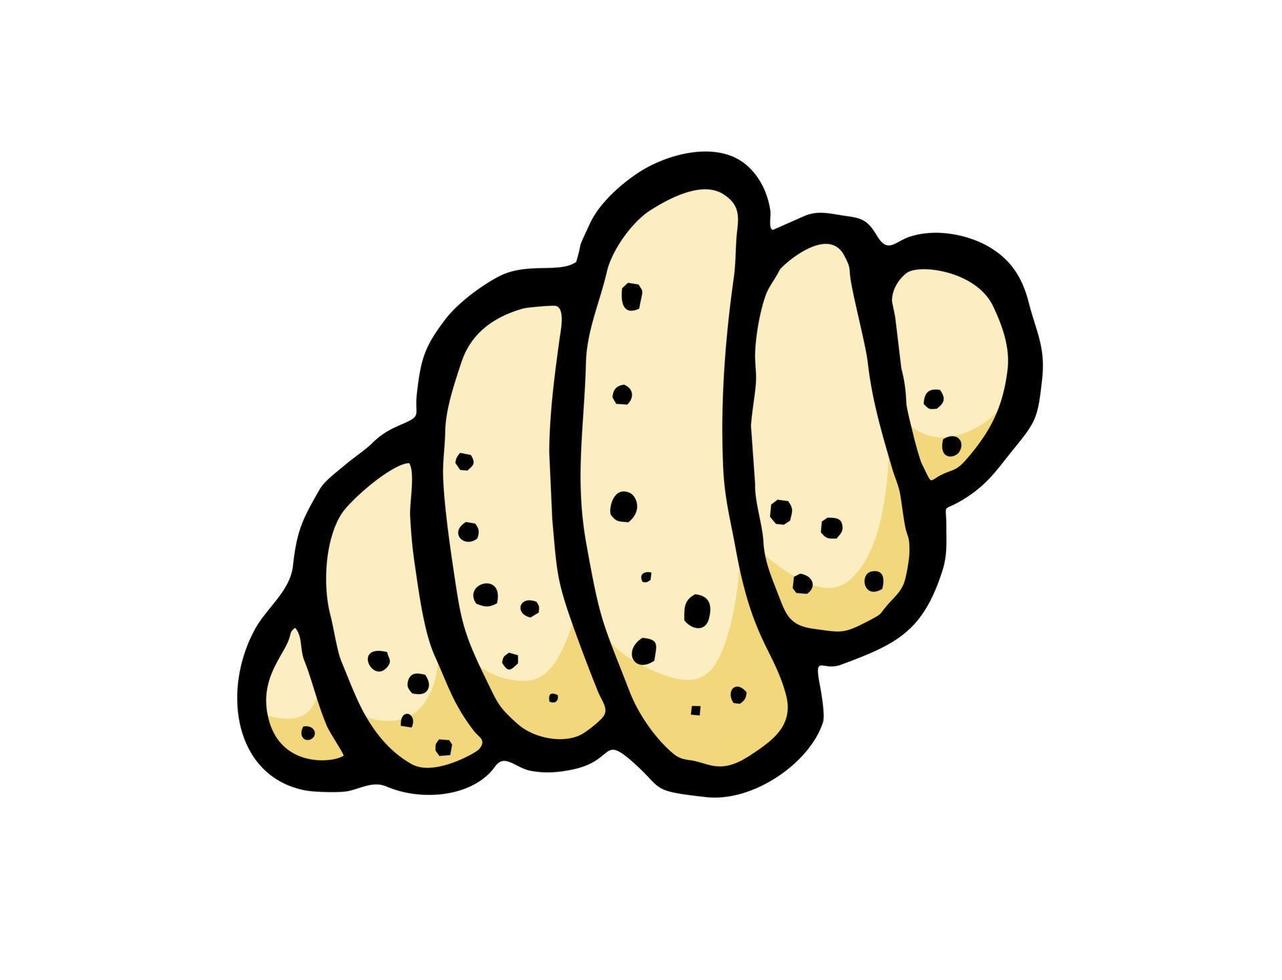 croissant est un vecteur d'élément de boulangerie dessiné à la main dans le style d'un croquis de doodle. pour les menus des cafés et boulangeries